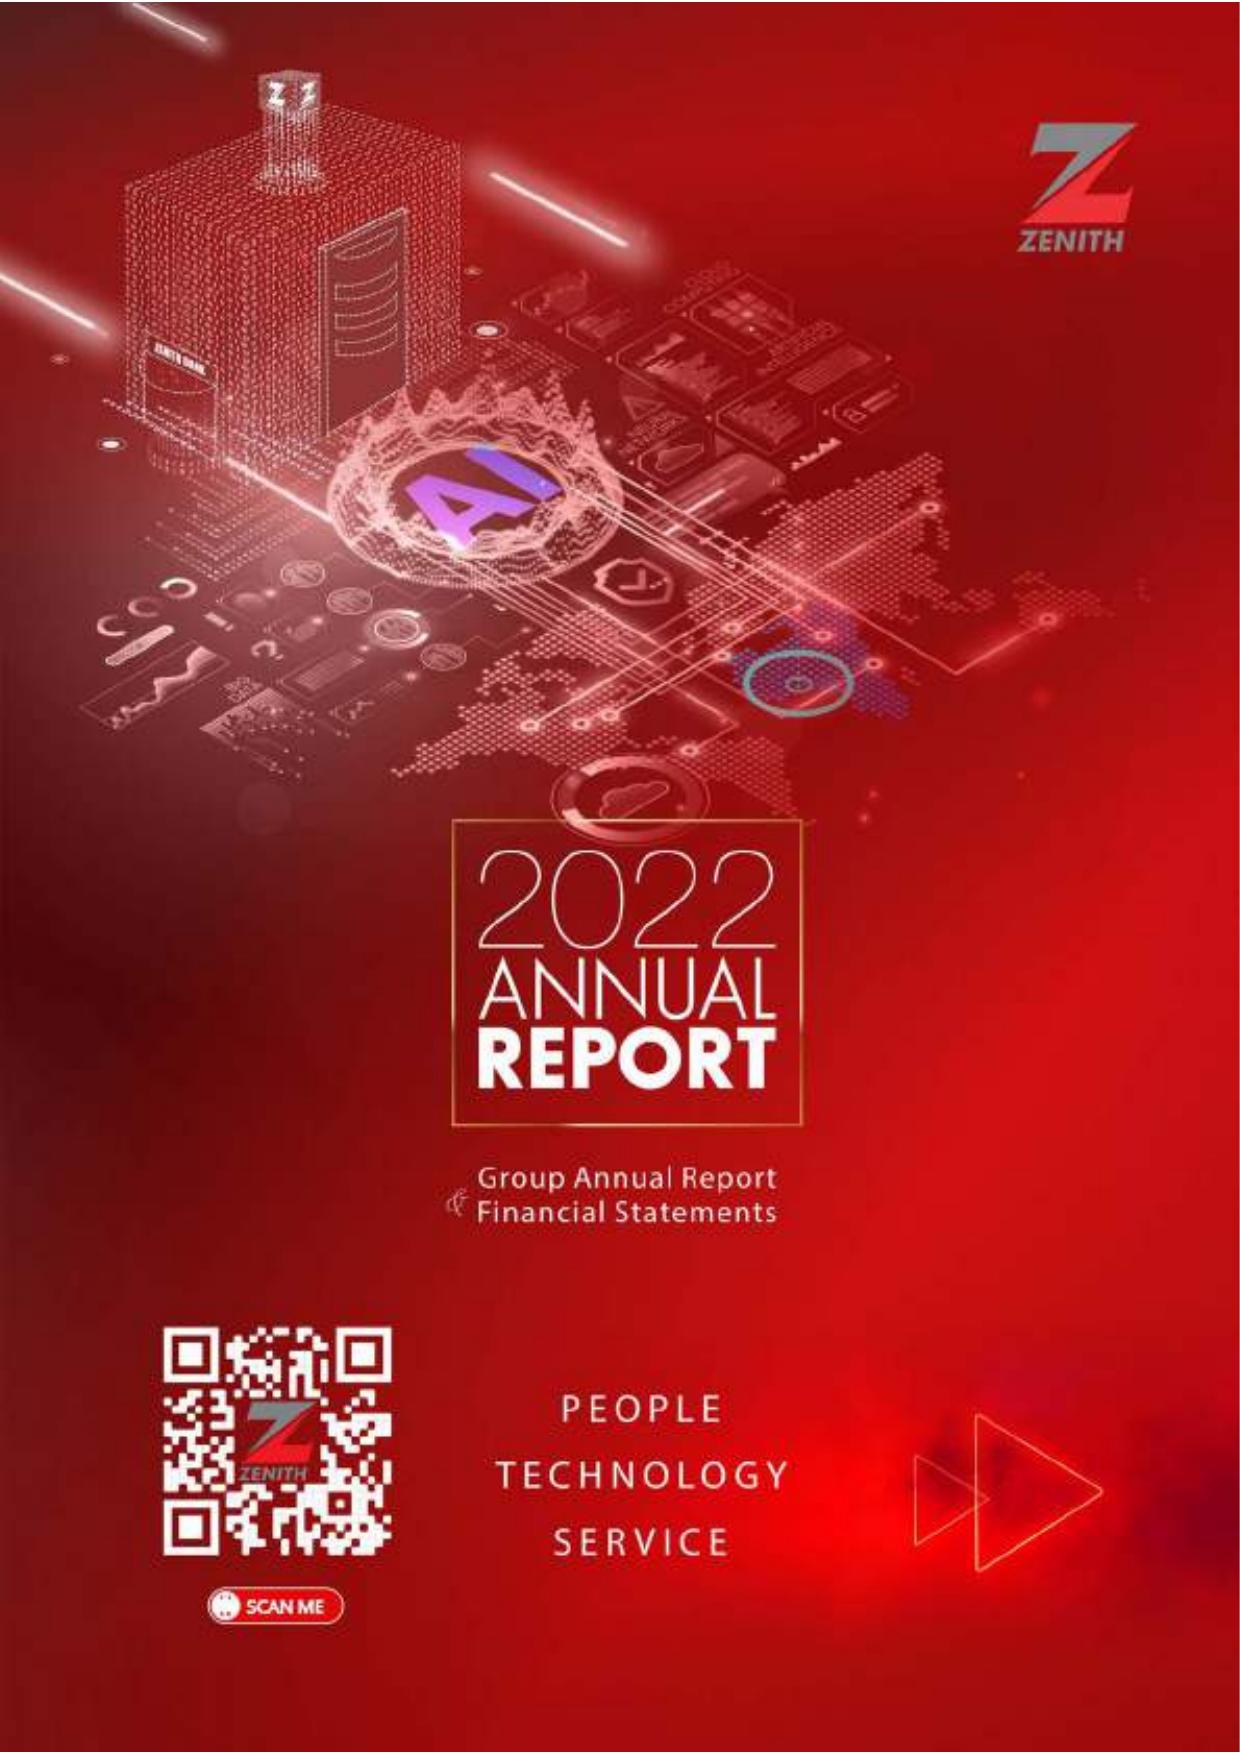 ZENITHBANK 2022 Annual Report